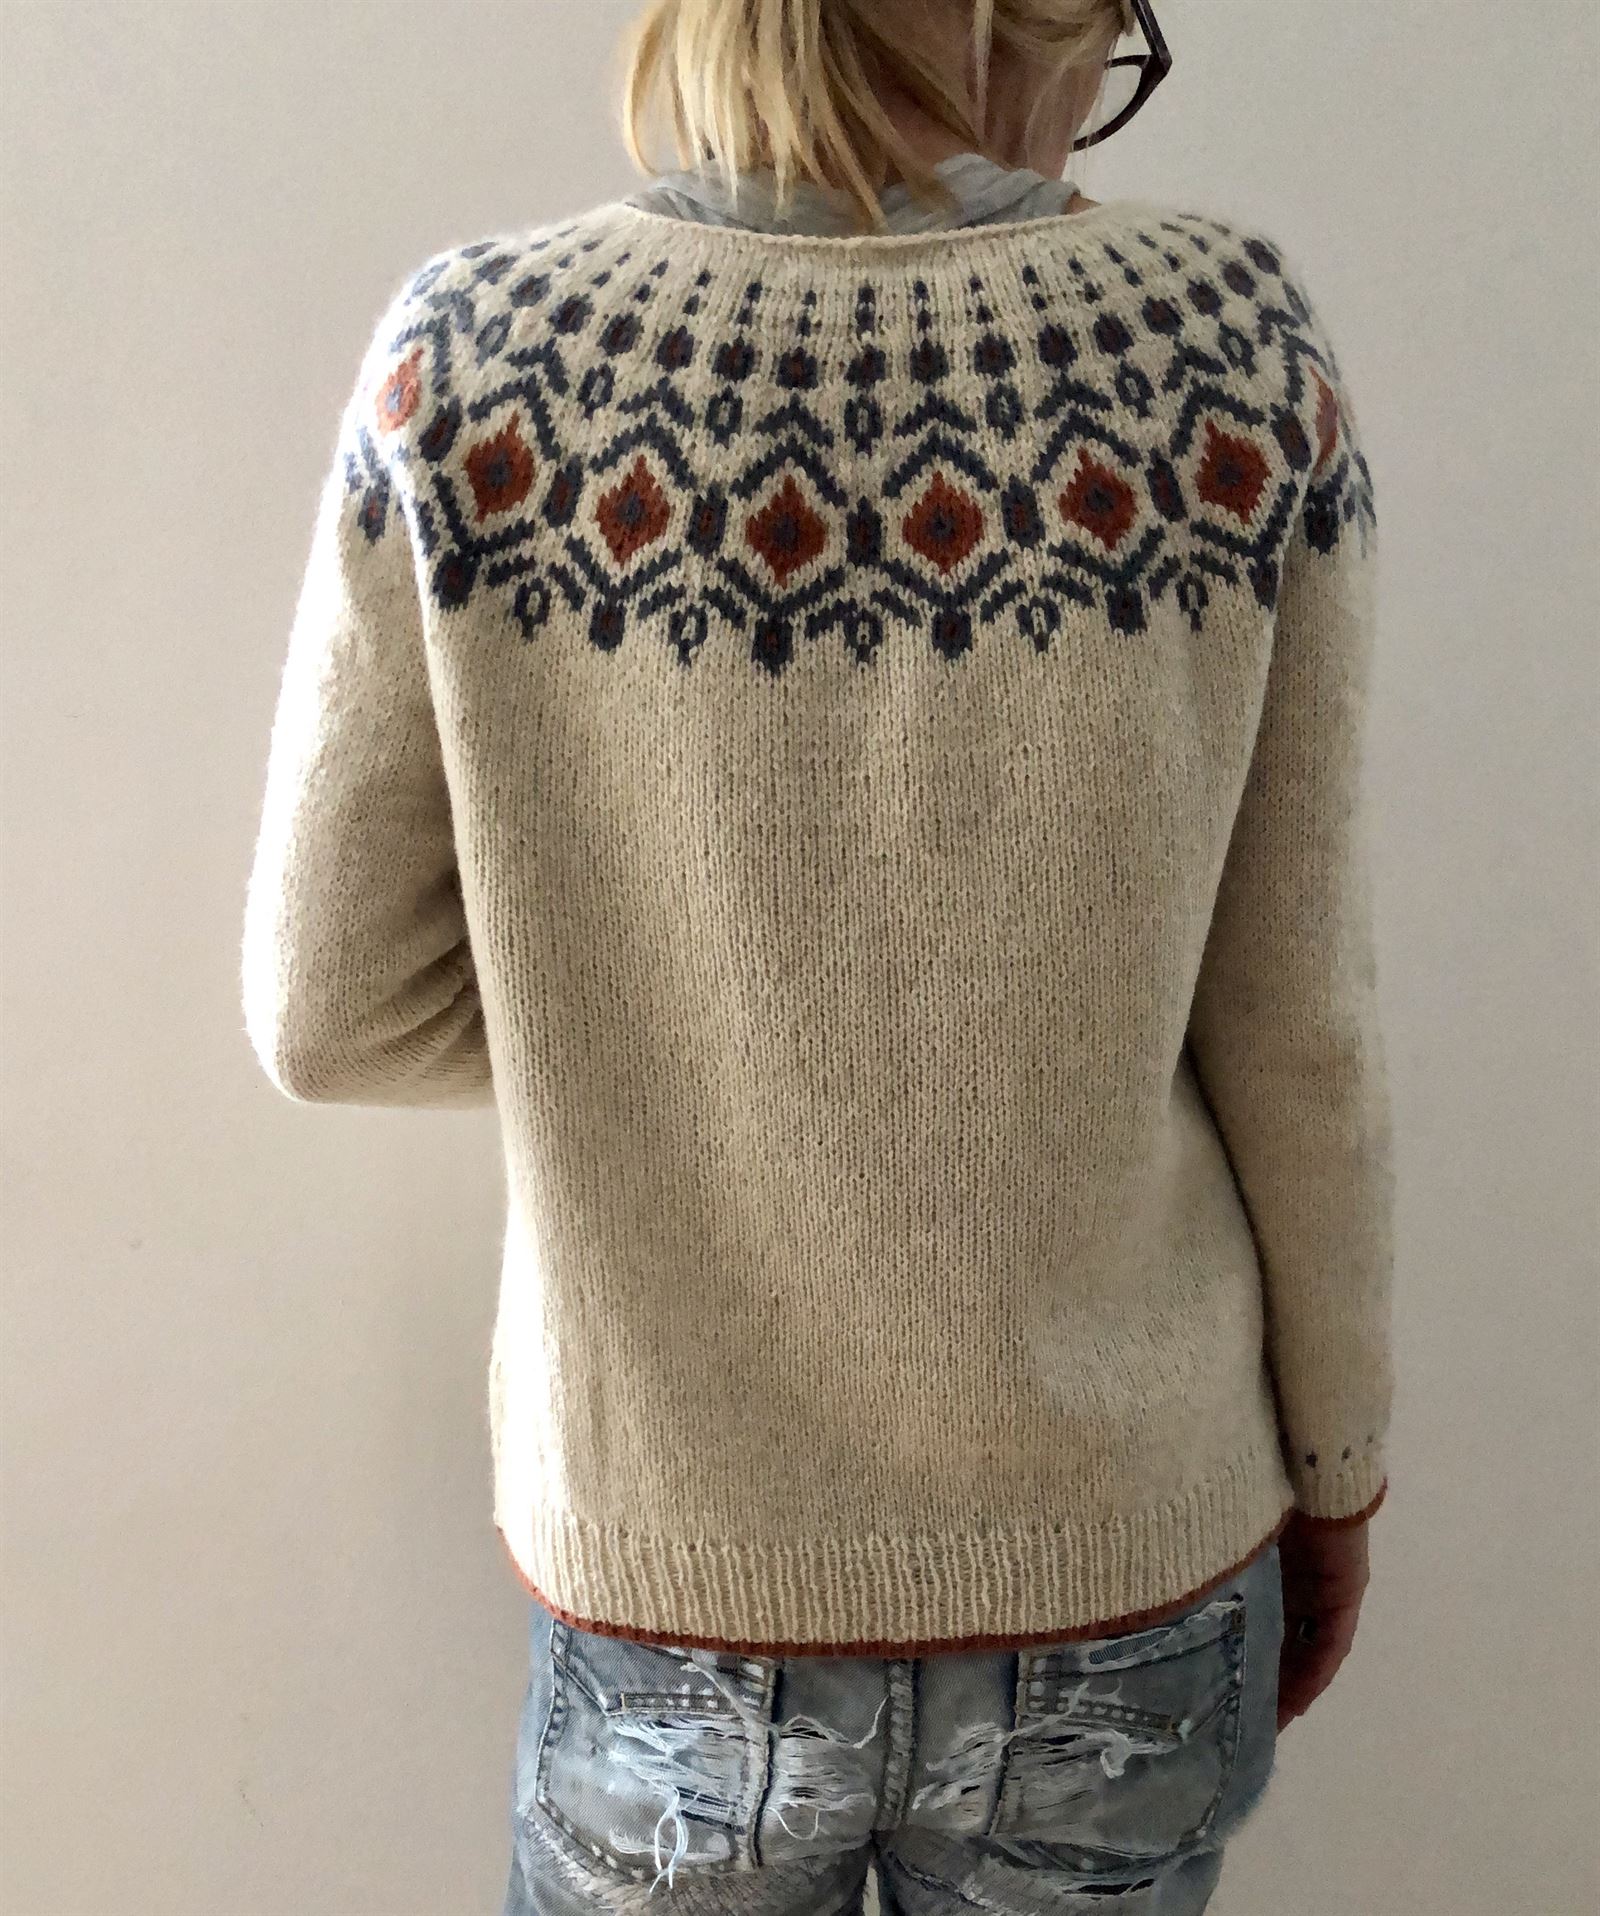 Tiberius sweater opskrift - Download her